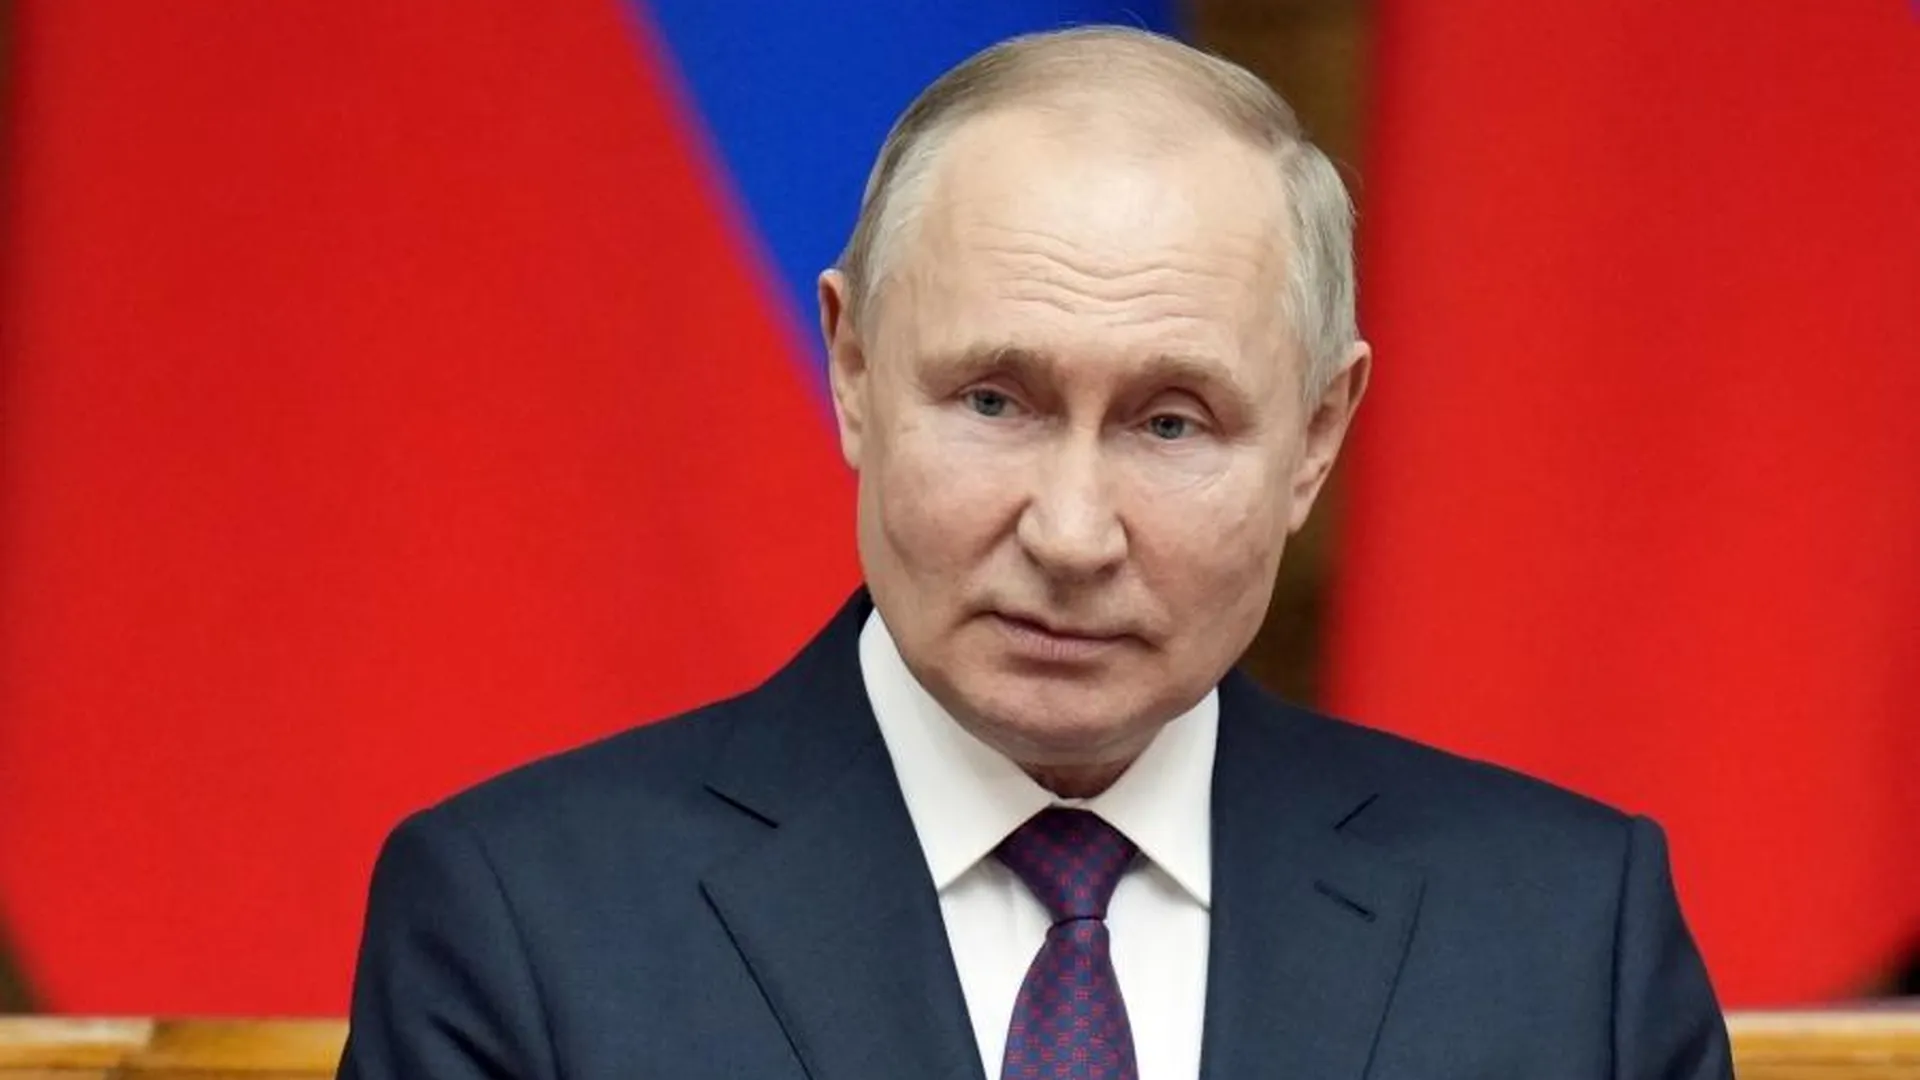 Опрос ВЦИОМ показал, что Путину доверяют 77% россиян